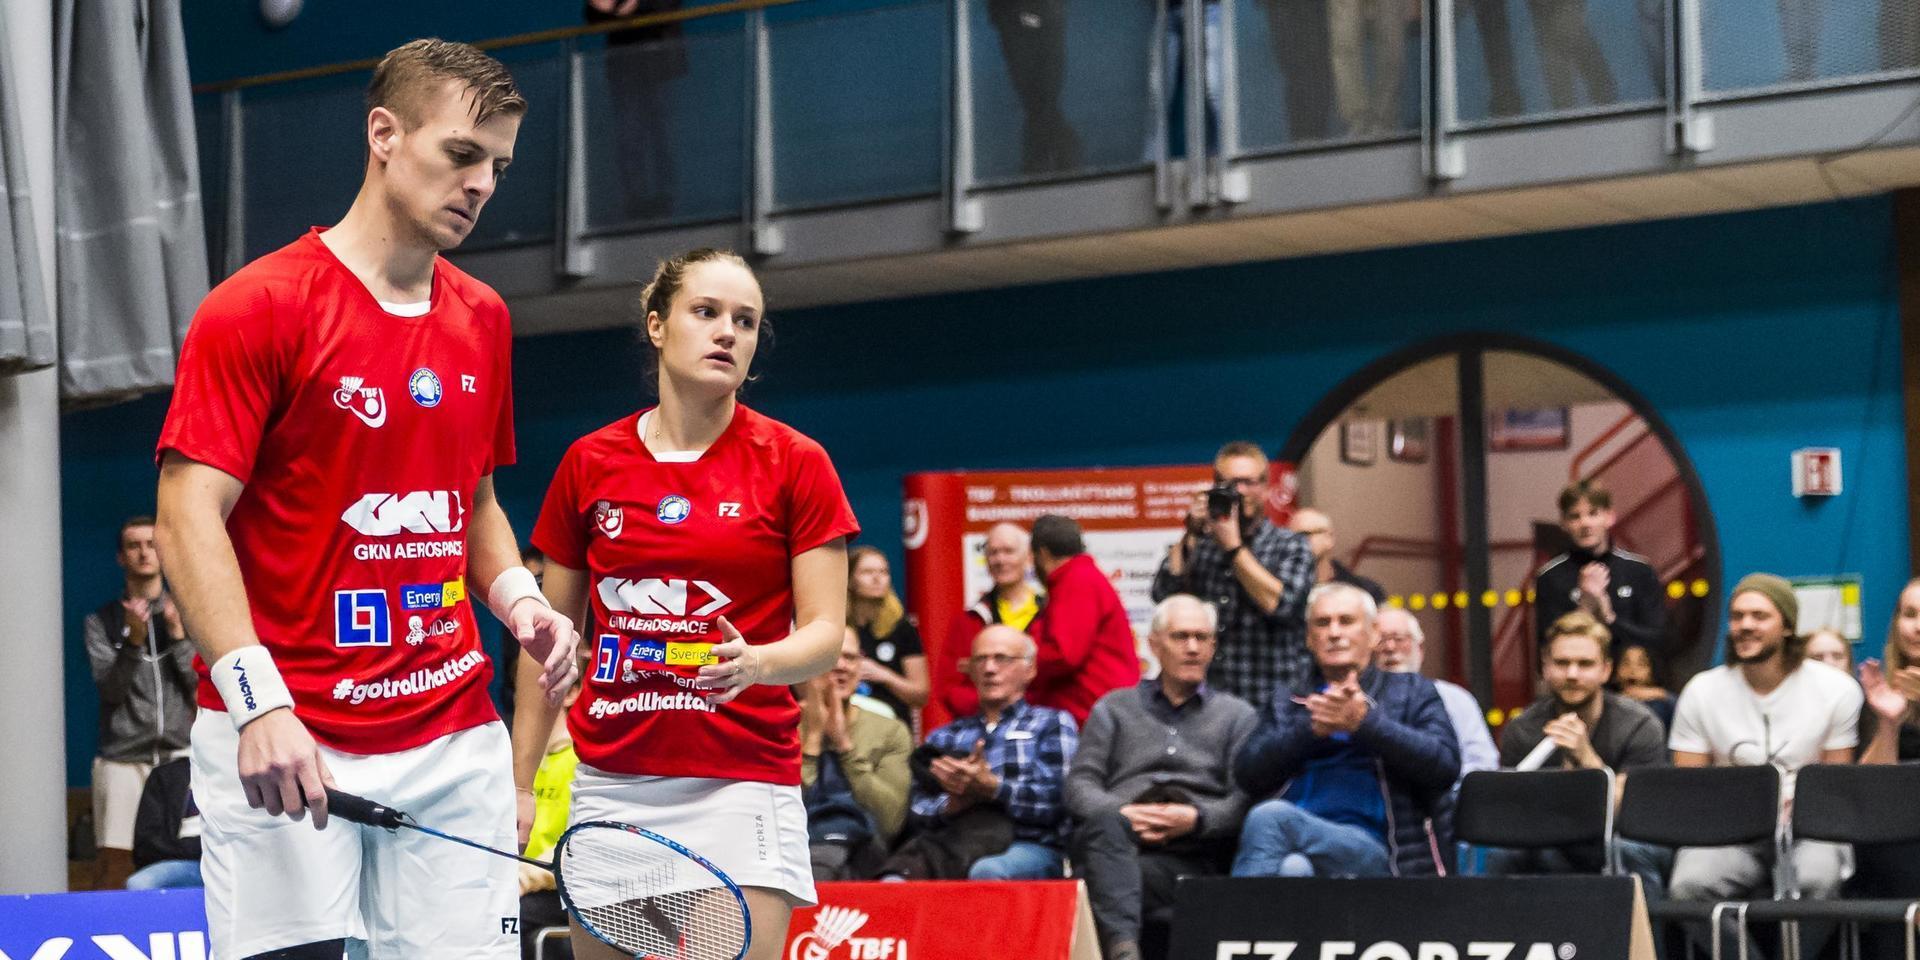 Snart ska grundserien i Svenska badmintonligan avslutas. Återstår att se om TBF:s danskar Hans-Kristian Vittinghus och Sara Lundgaard kommer kunna vara med. 